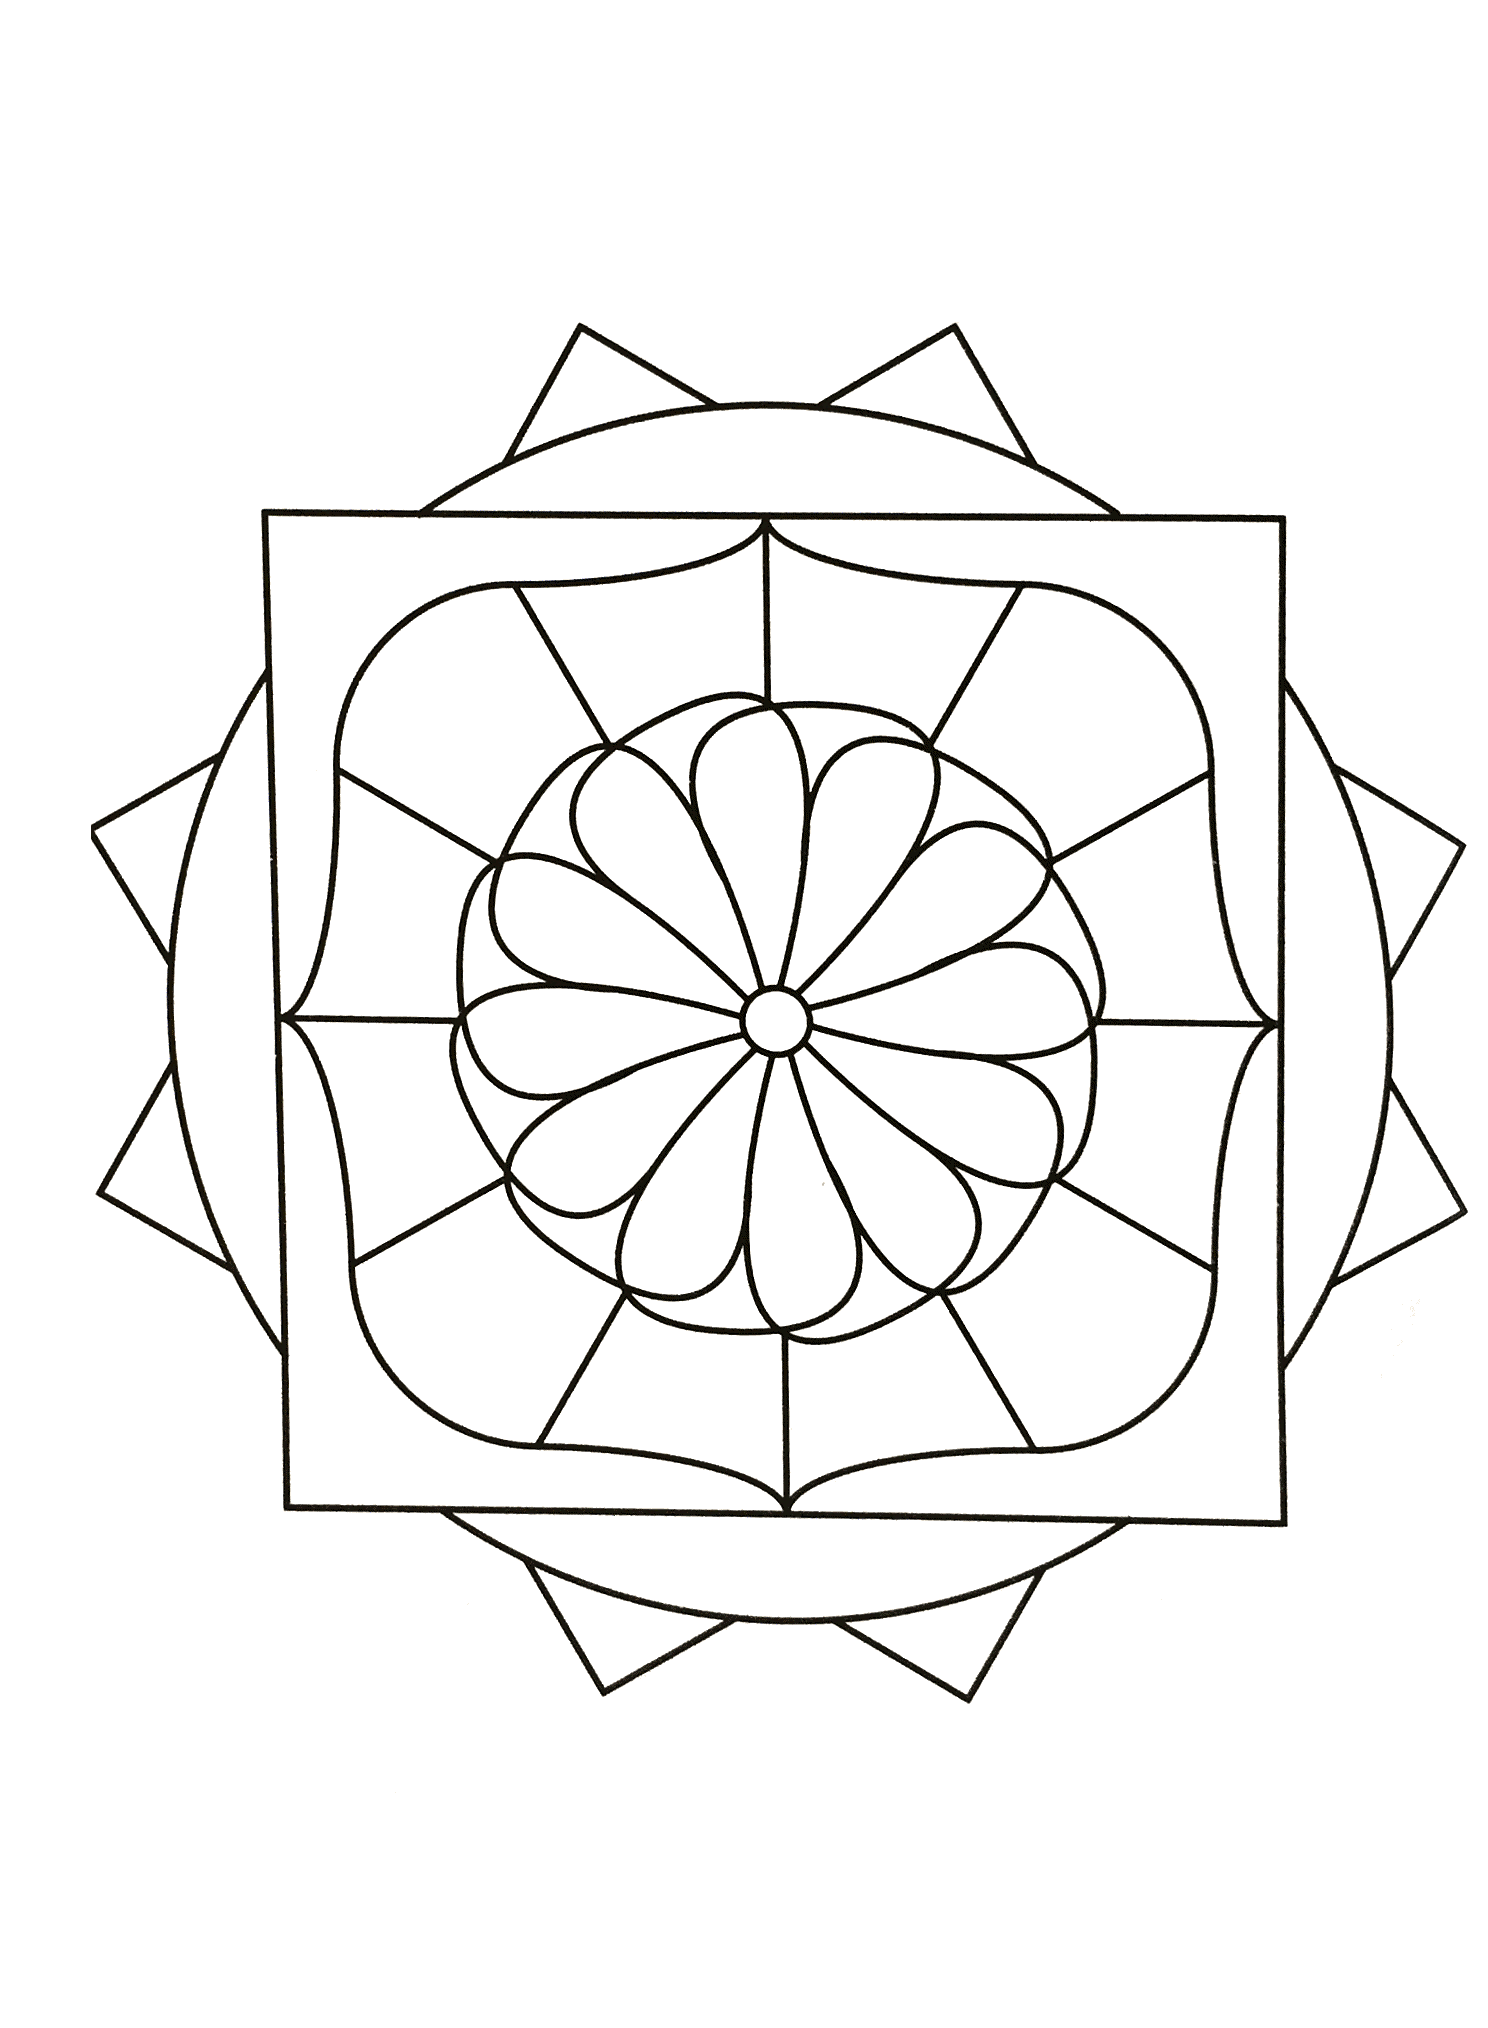 Si vous recherchez de l'harmonie, ce Mandala d'une grande qualité vous conviendra sans doute. A vous de trouver la meilleure méthode et technique pour le colorier.